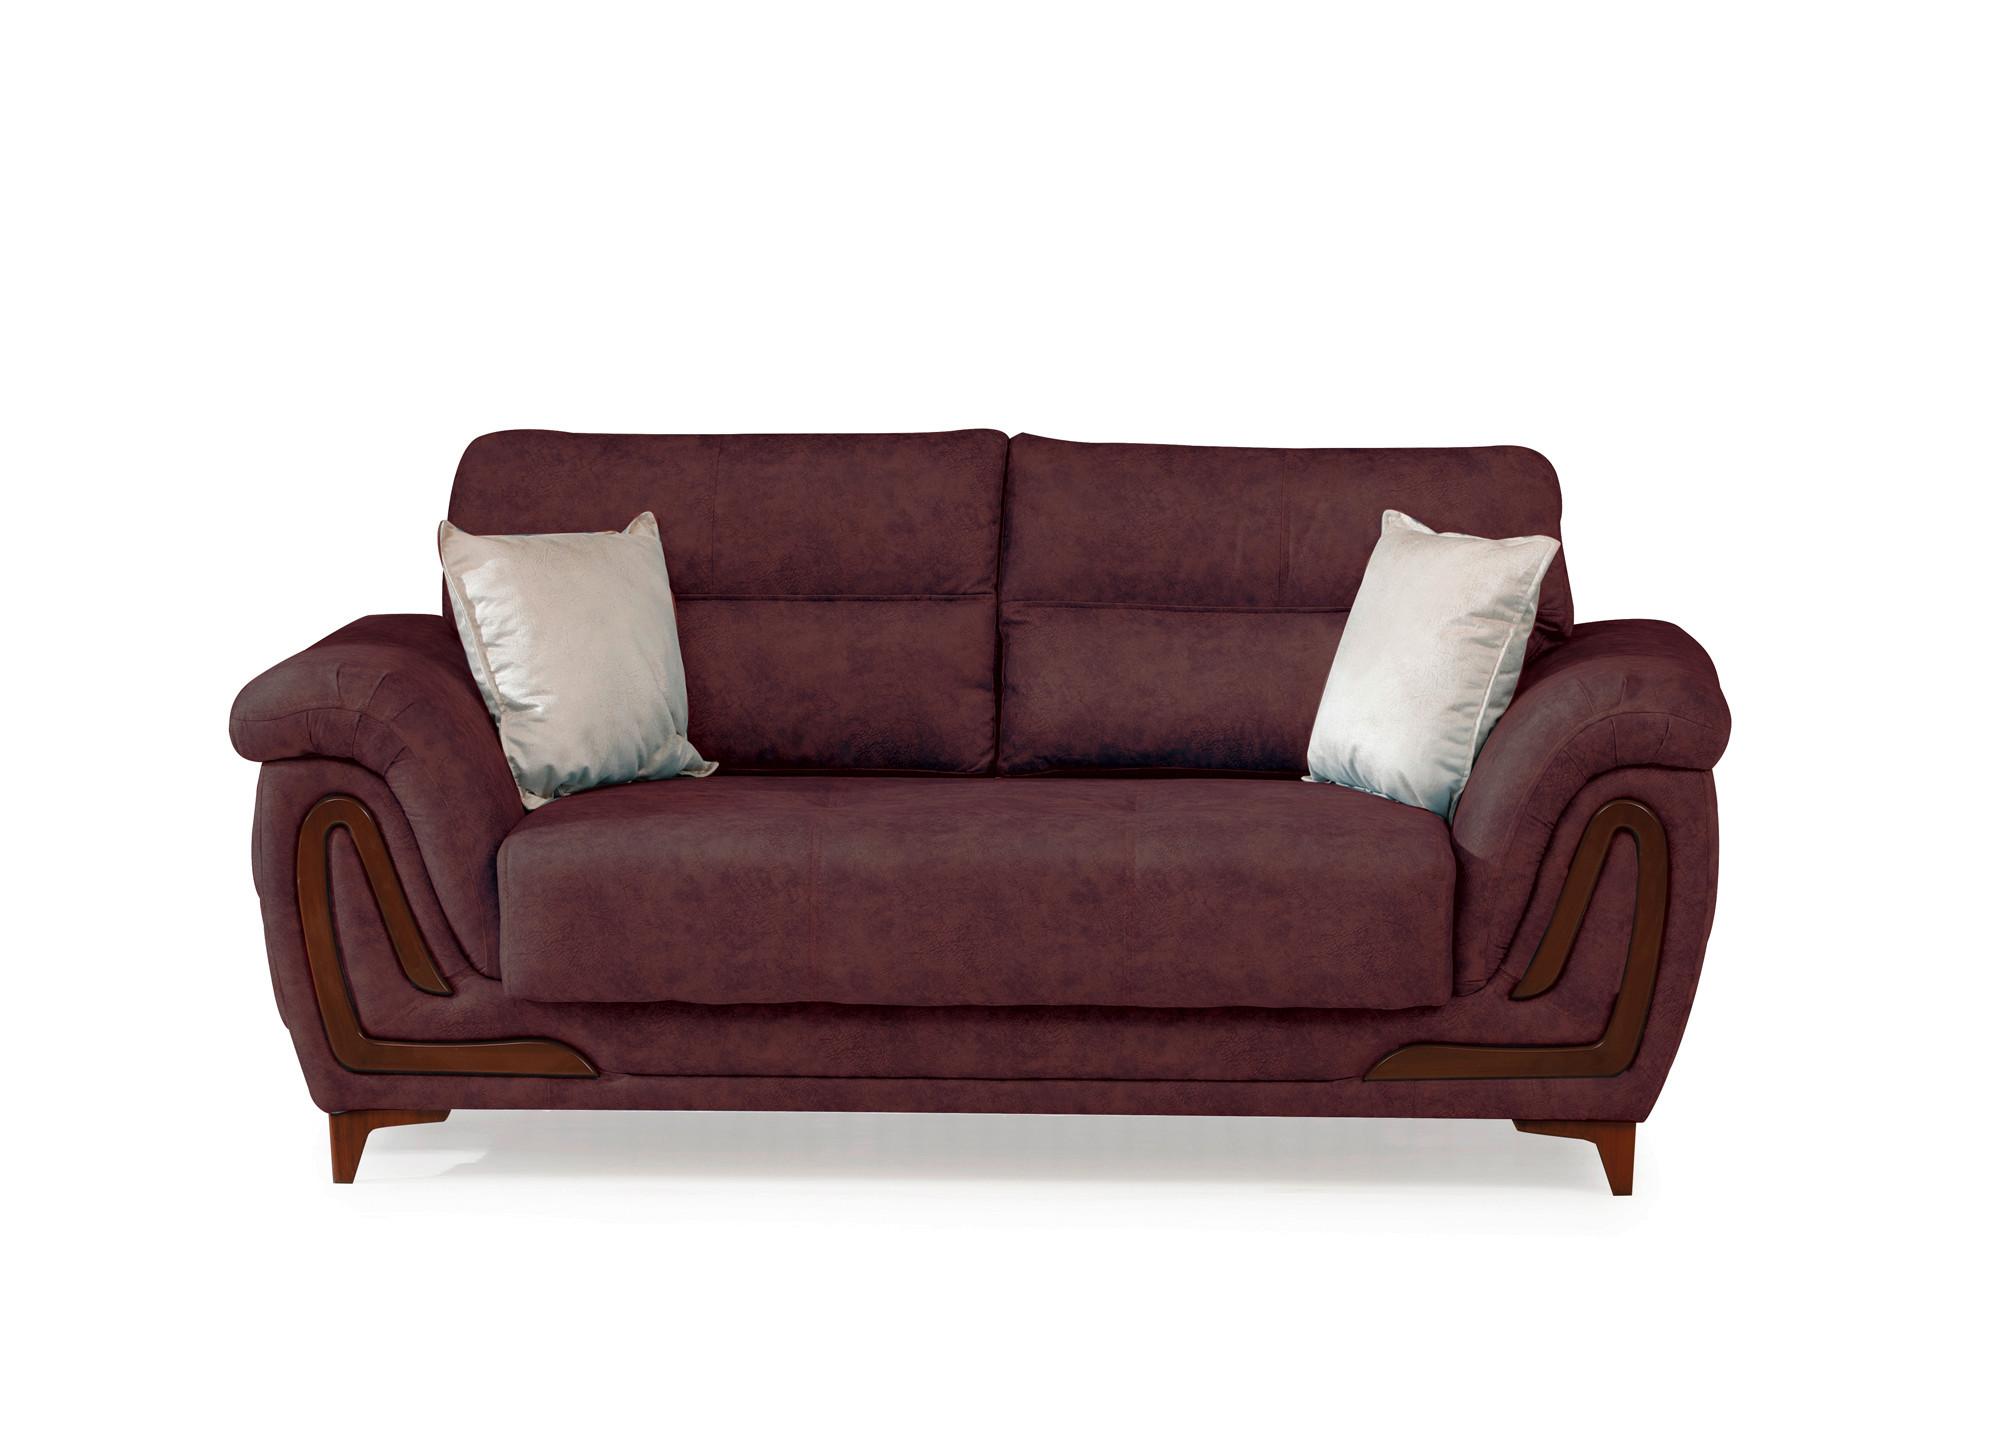 2-Sitzer-Sofa Alfa Mit Stauraum Webstoff Altrosa - Dunkelbraun/Altrosa, Design, Textil (191/87/98cm) - Livetastic